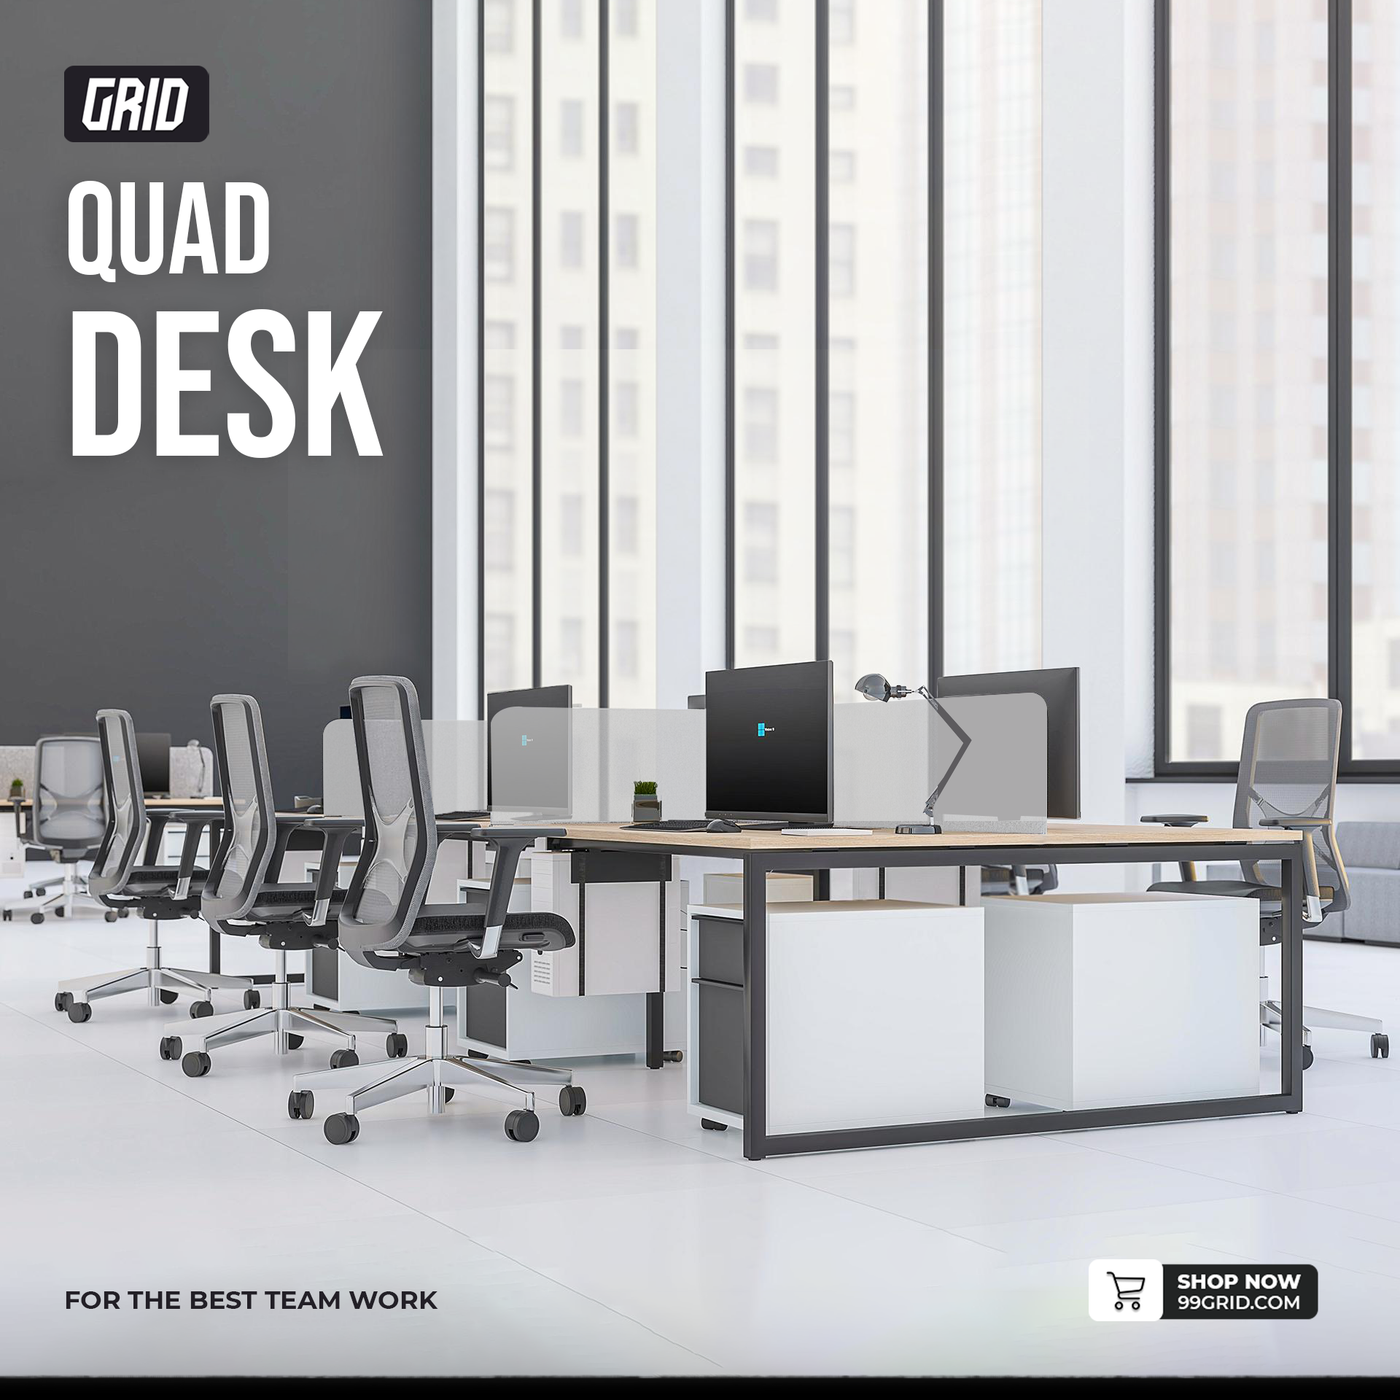 GRID Quad Desk